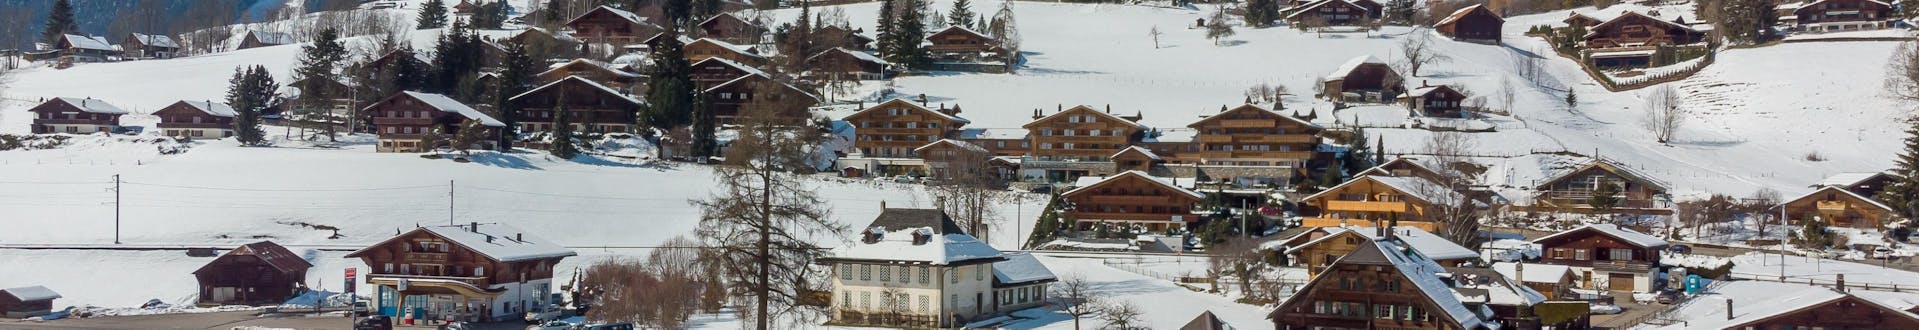 Vista dall'alto di Rougemont, in Svizzera, coperta di neve in inverno.